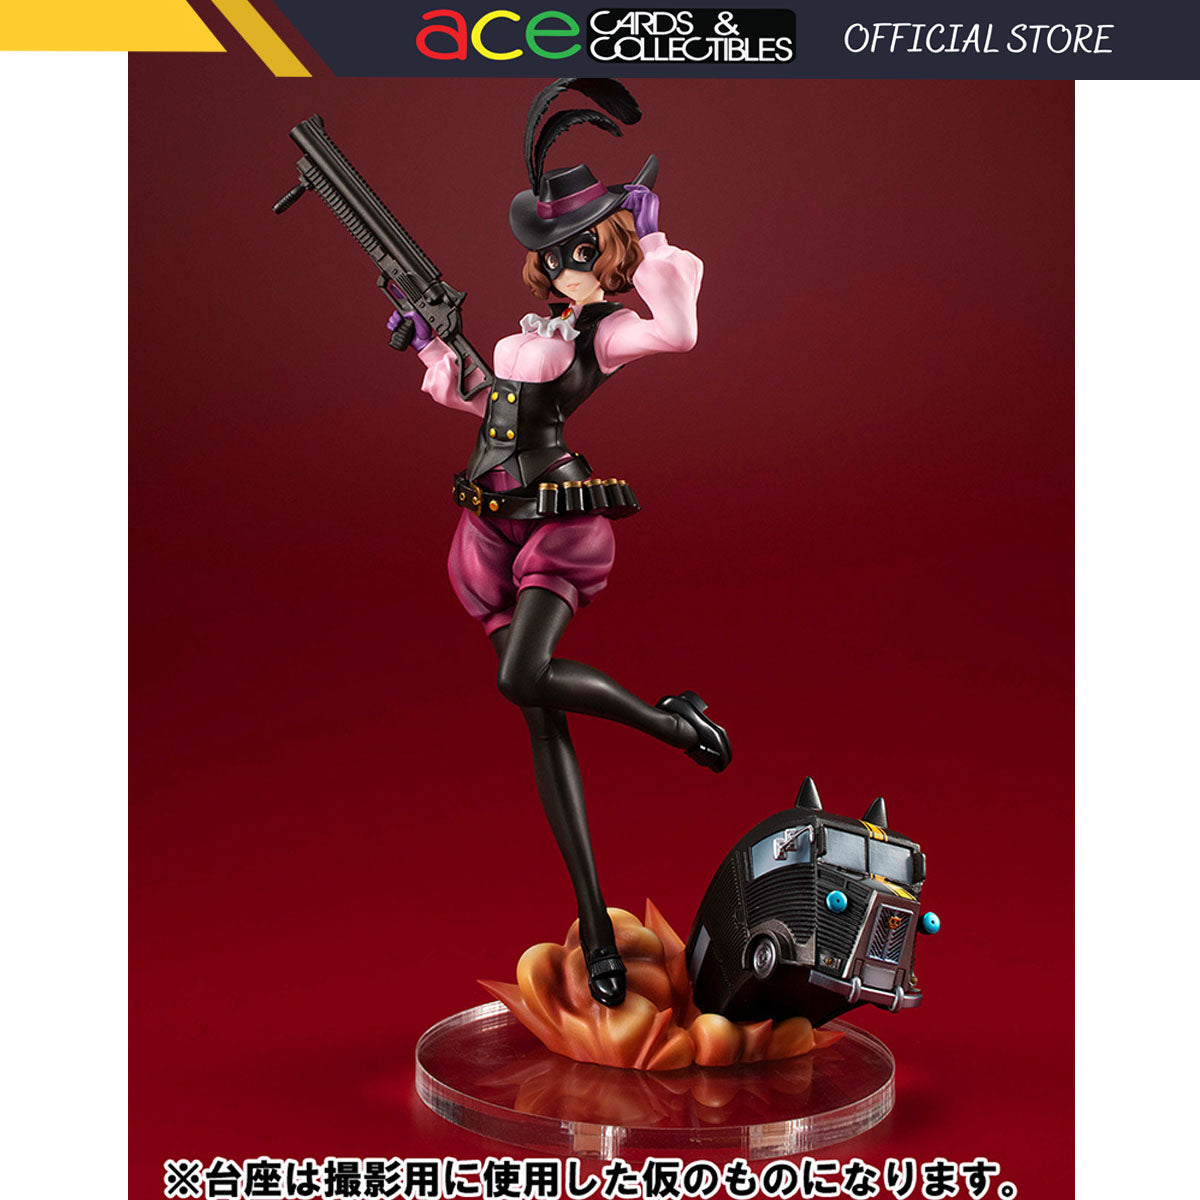 Persona 5: The Royal Noir -Lucrea Series- "Haru Okumura & Morgana Car"-MegaHouse-Ace Cards & Collectibles